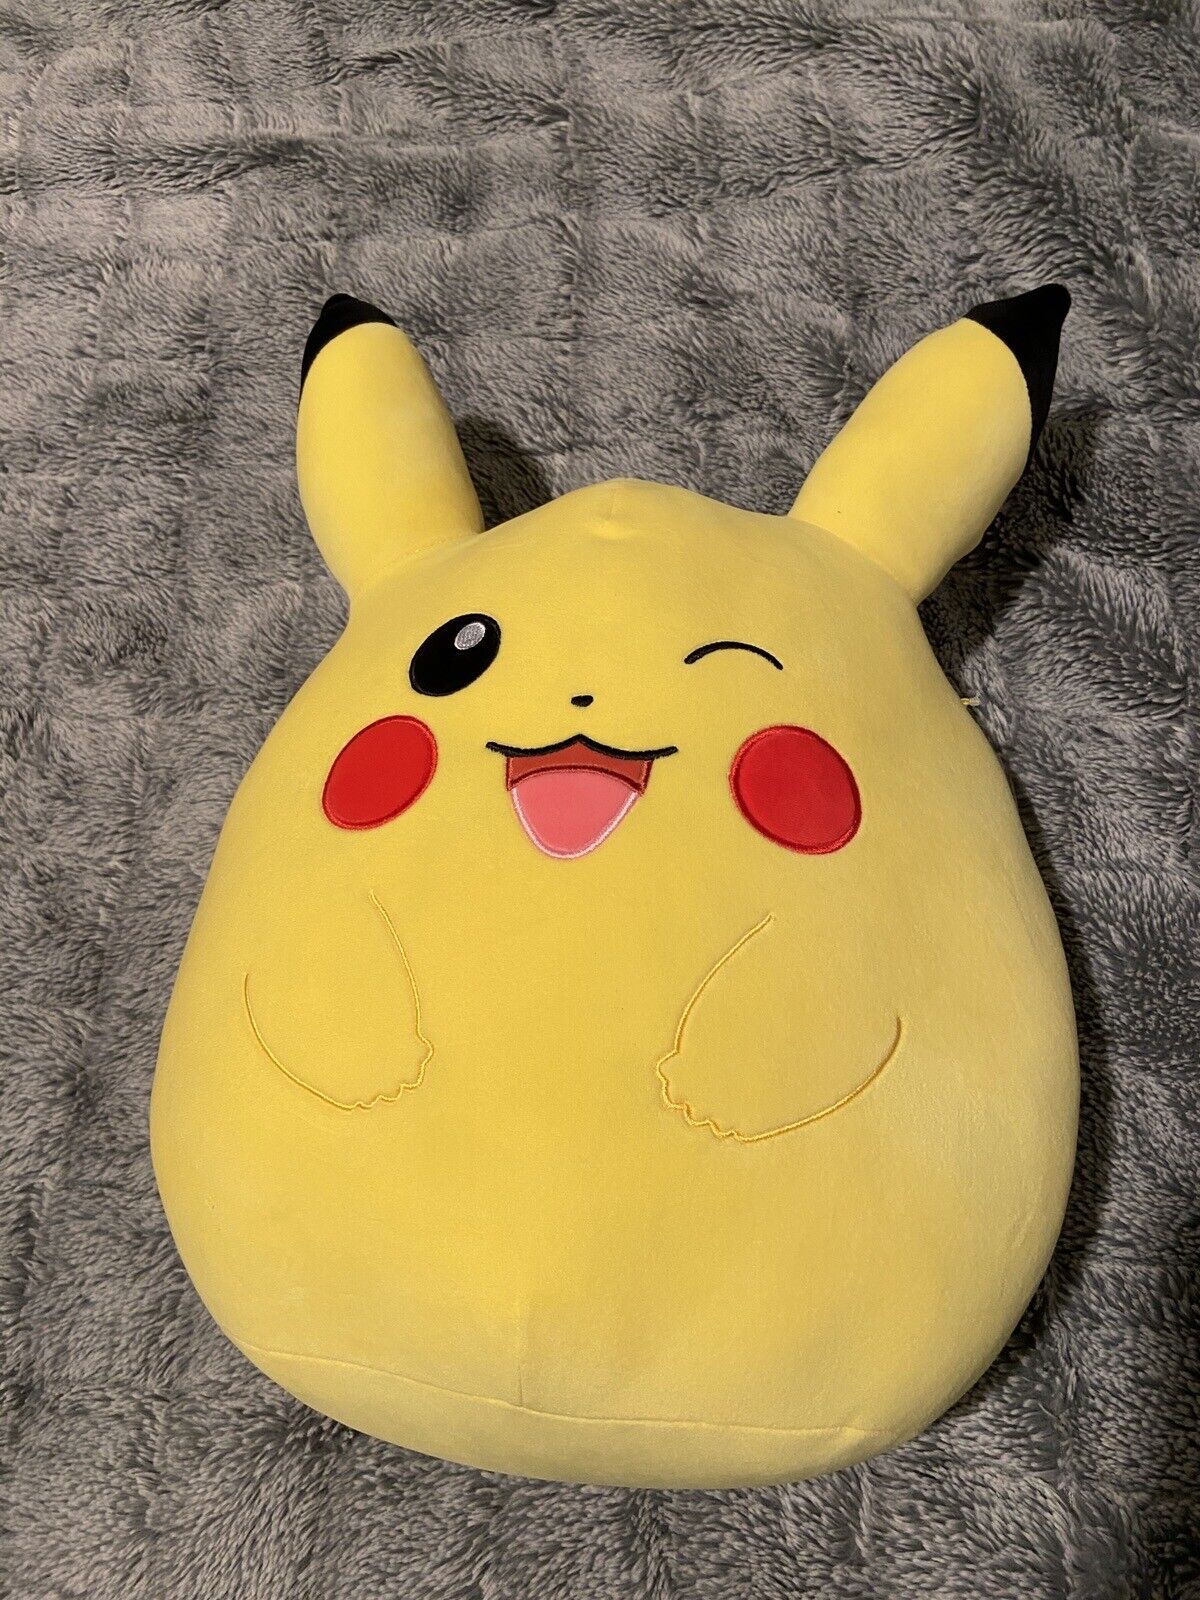 New Winking Pokémon Pikachu Squishmallow